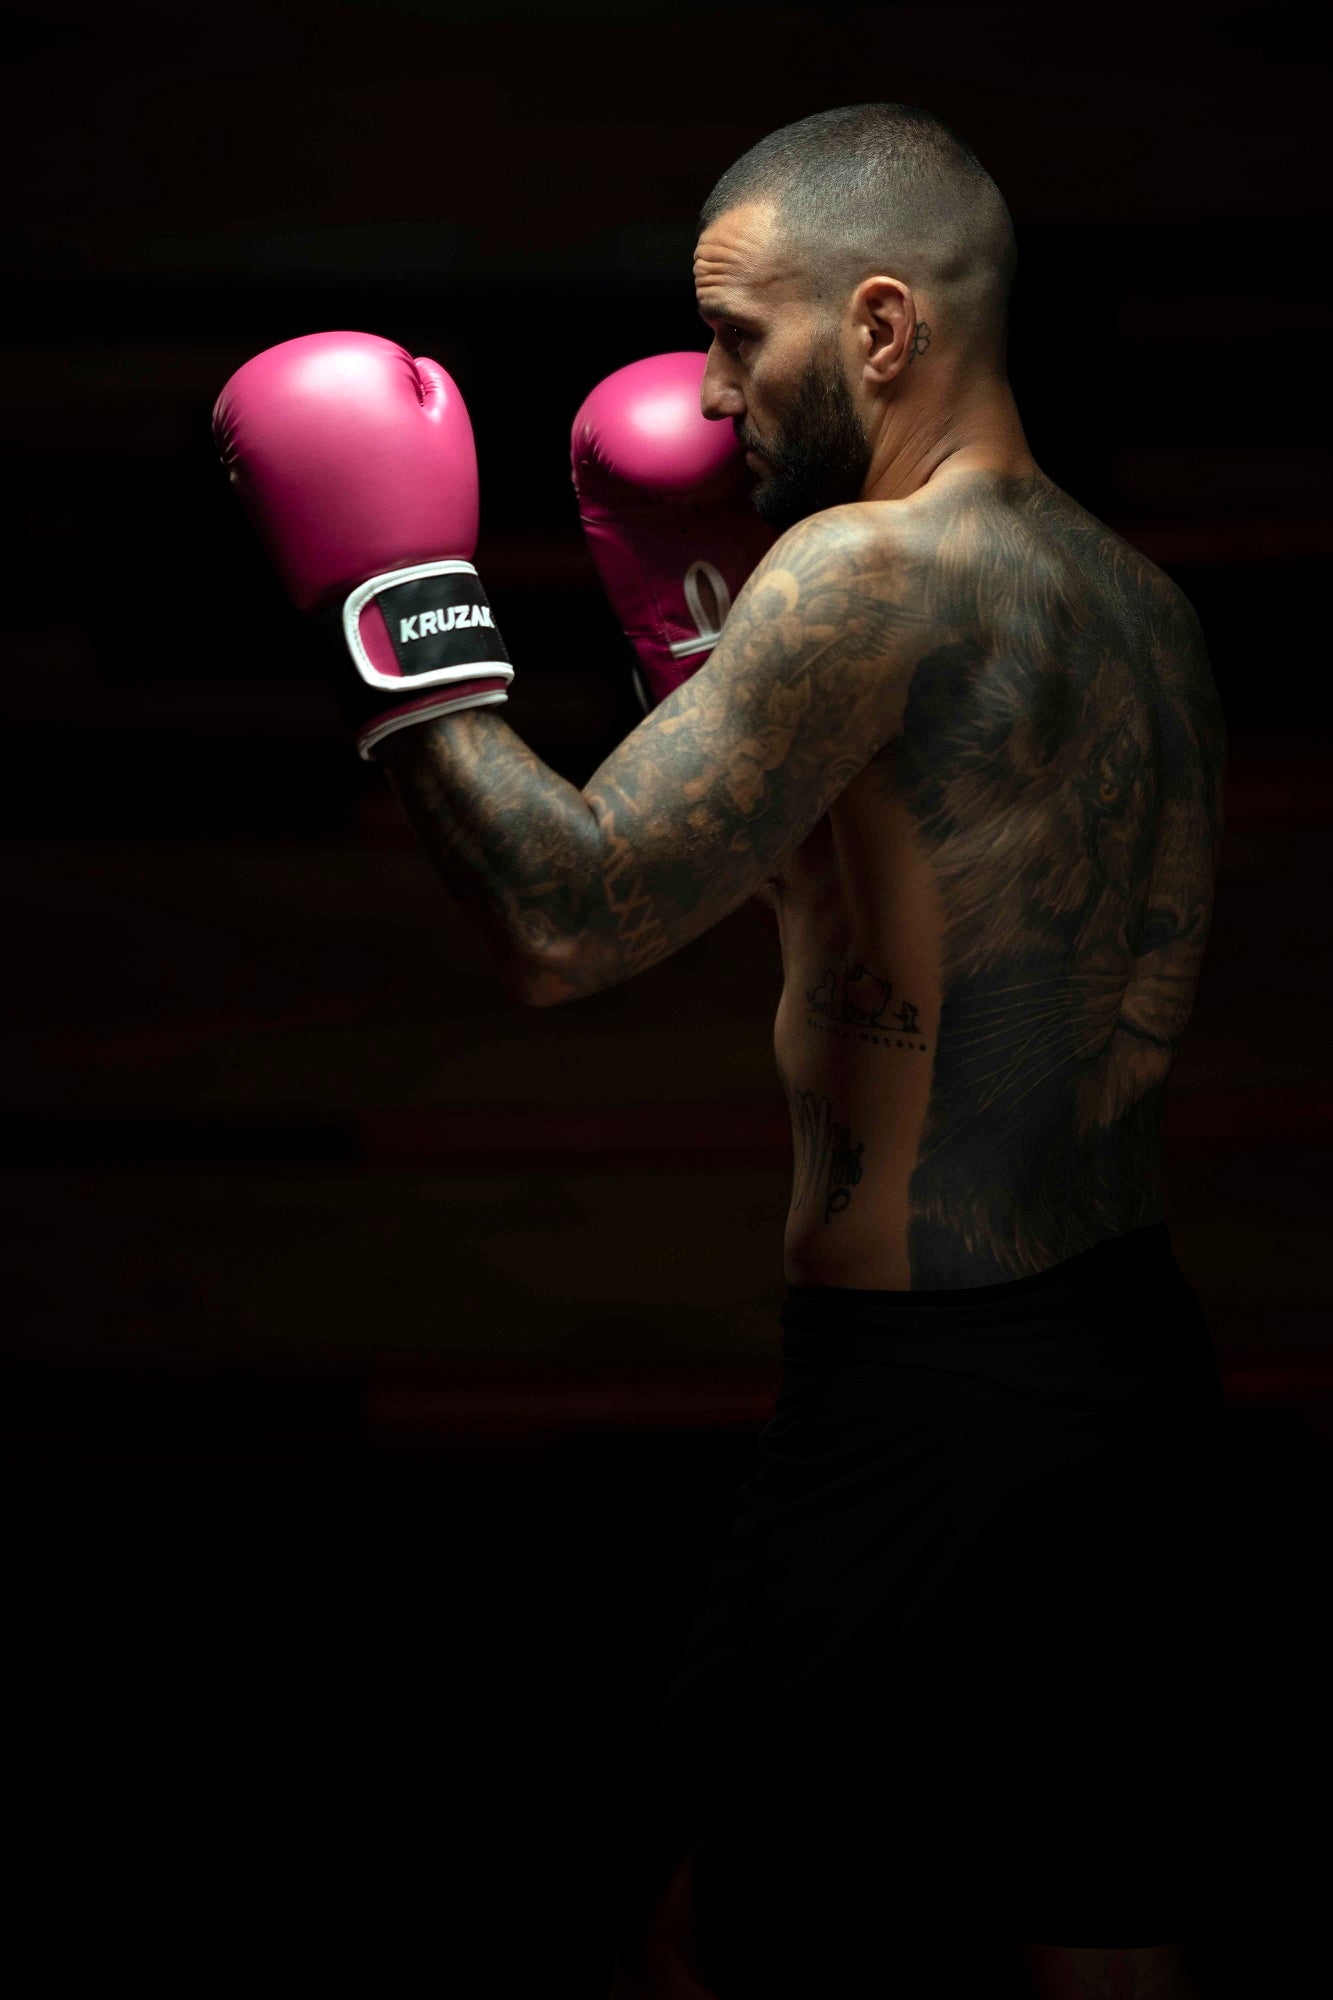 Man wearing Kruzak Pink boxing gloves